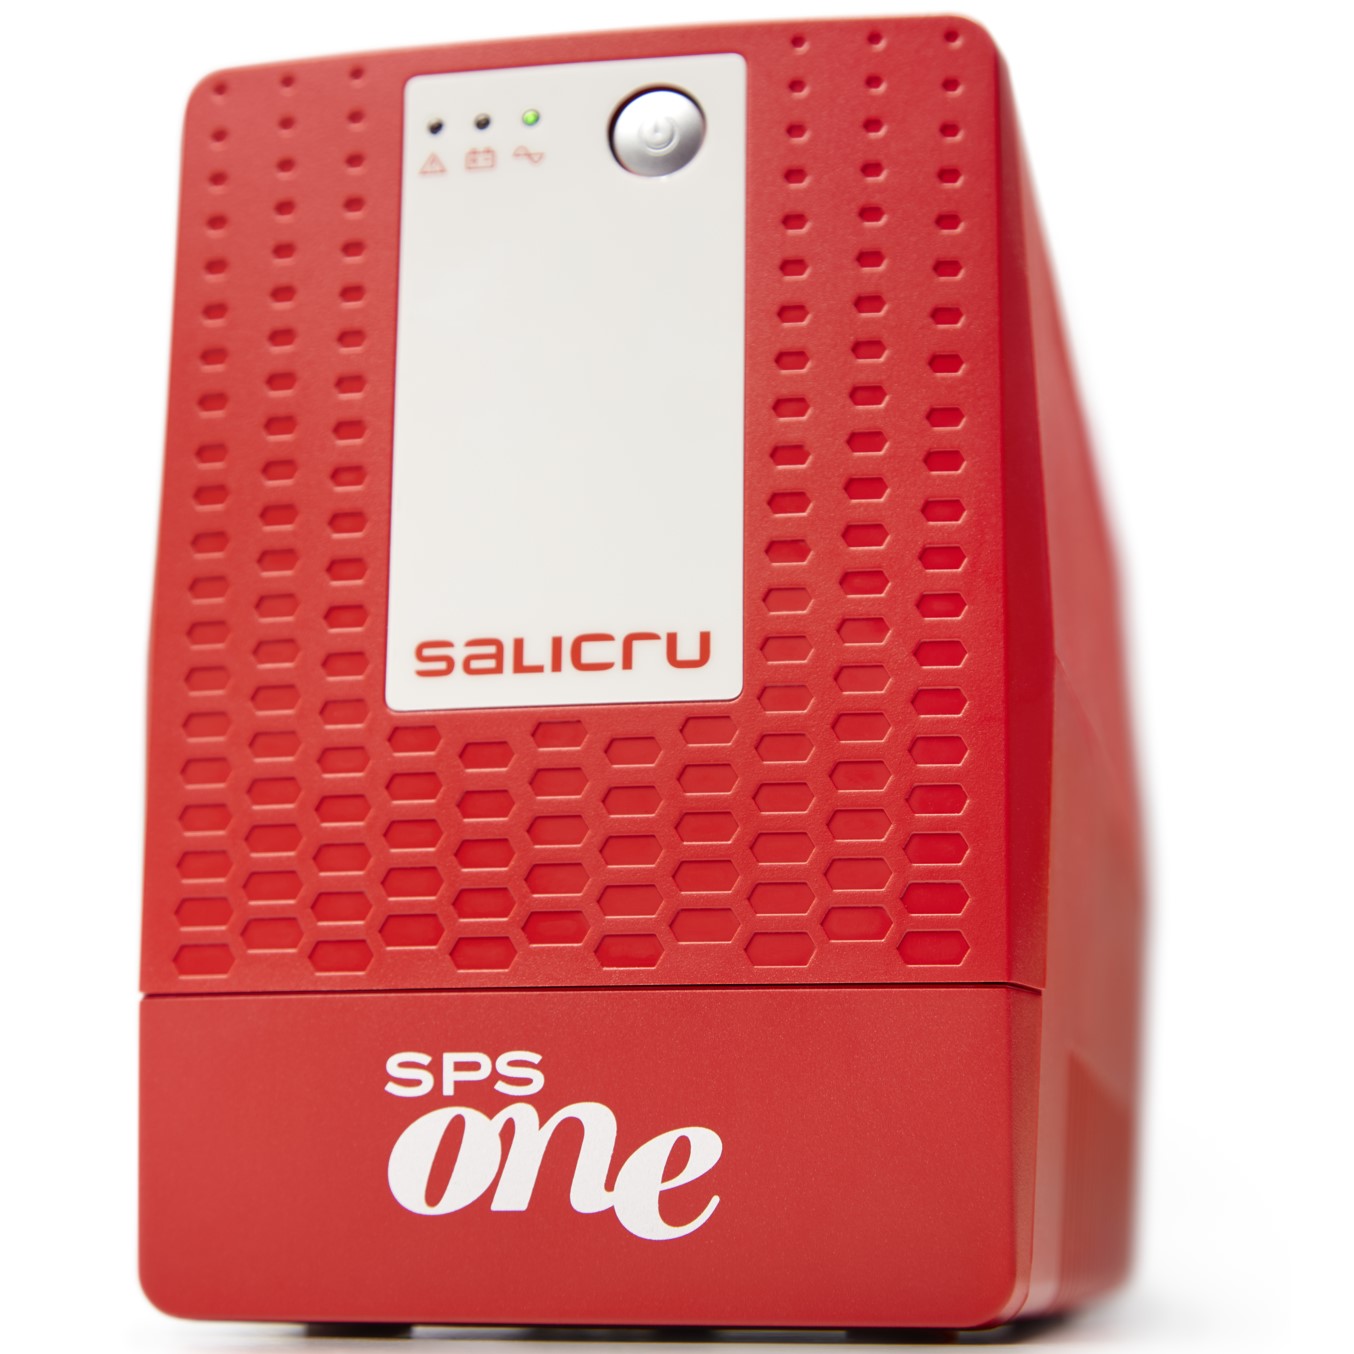 Sai salicru one sps1100va - 600w new